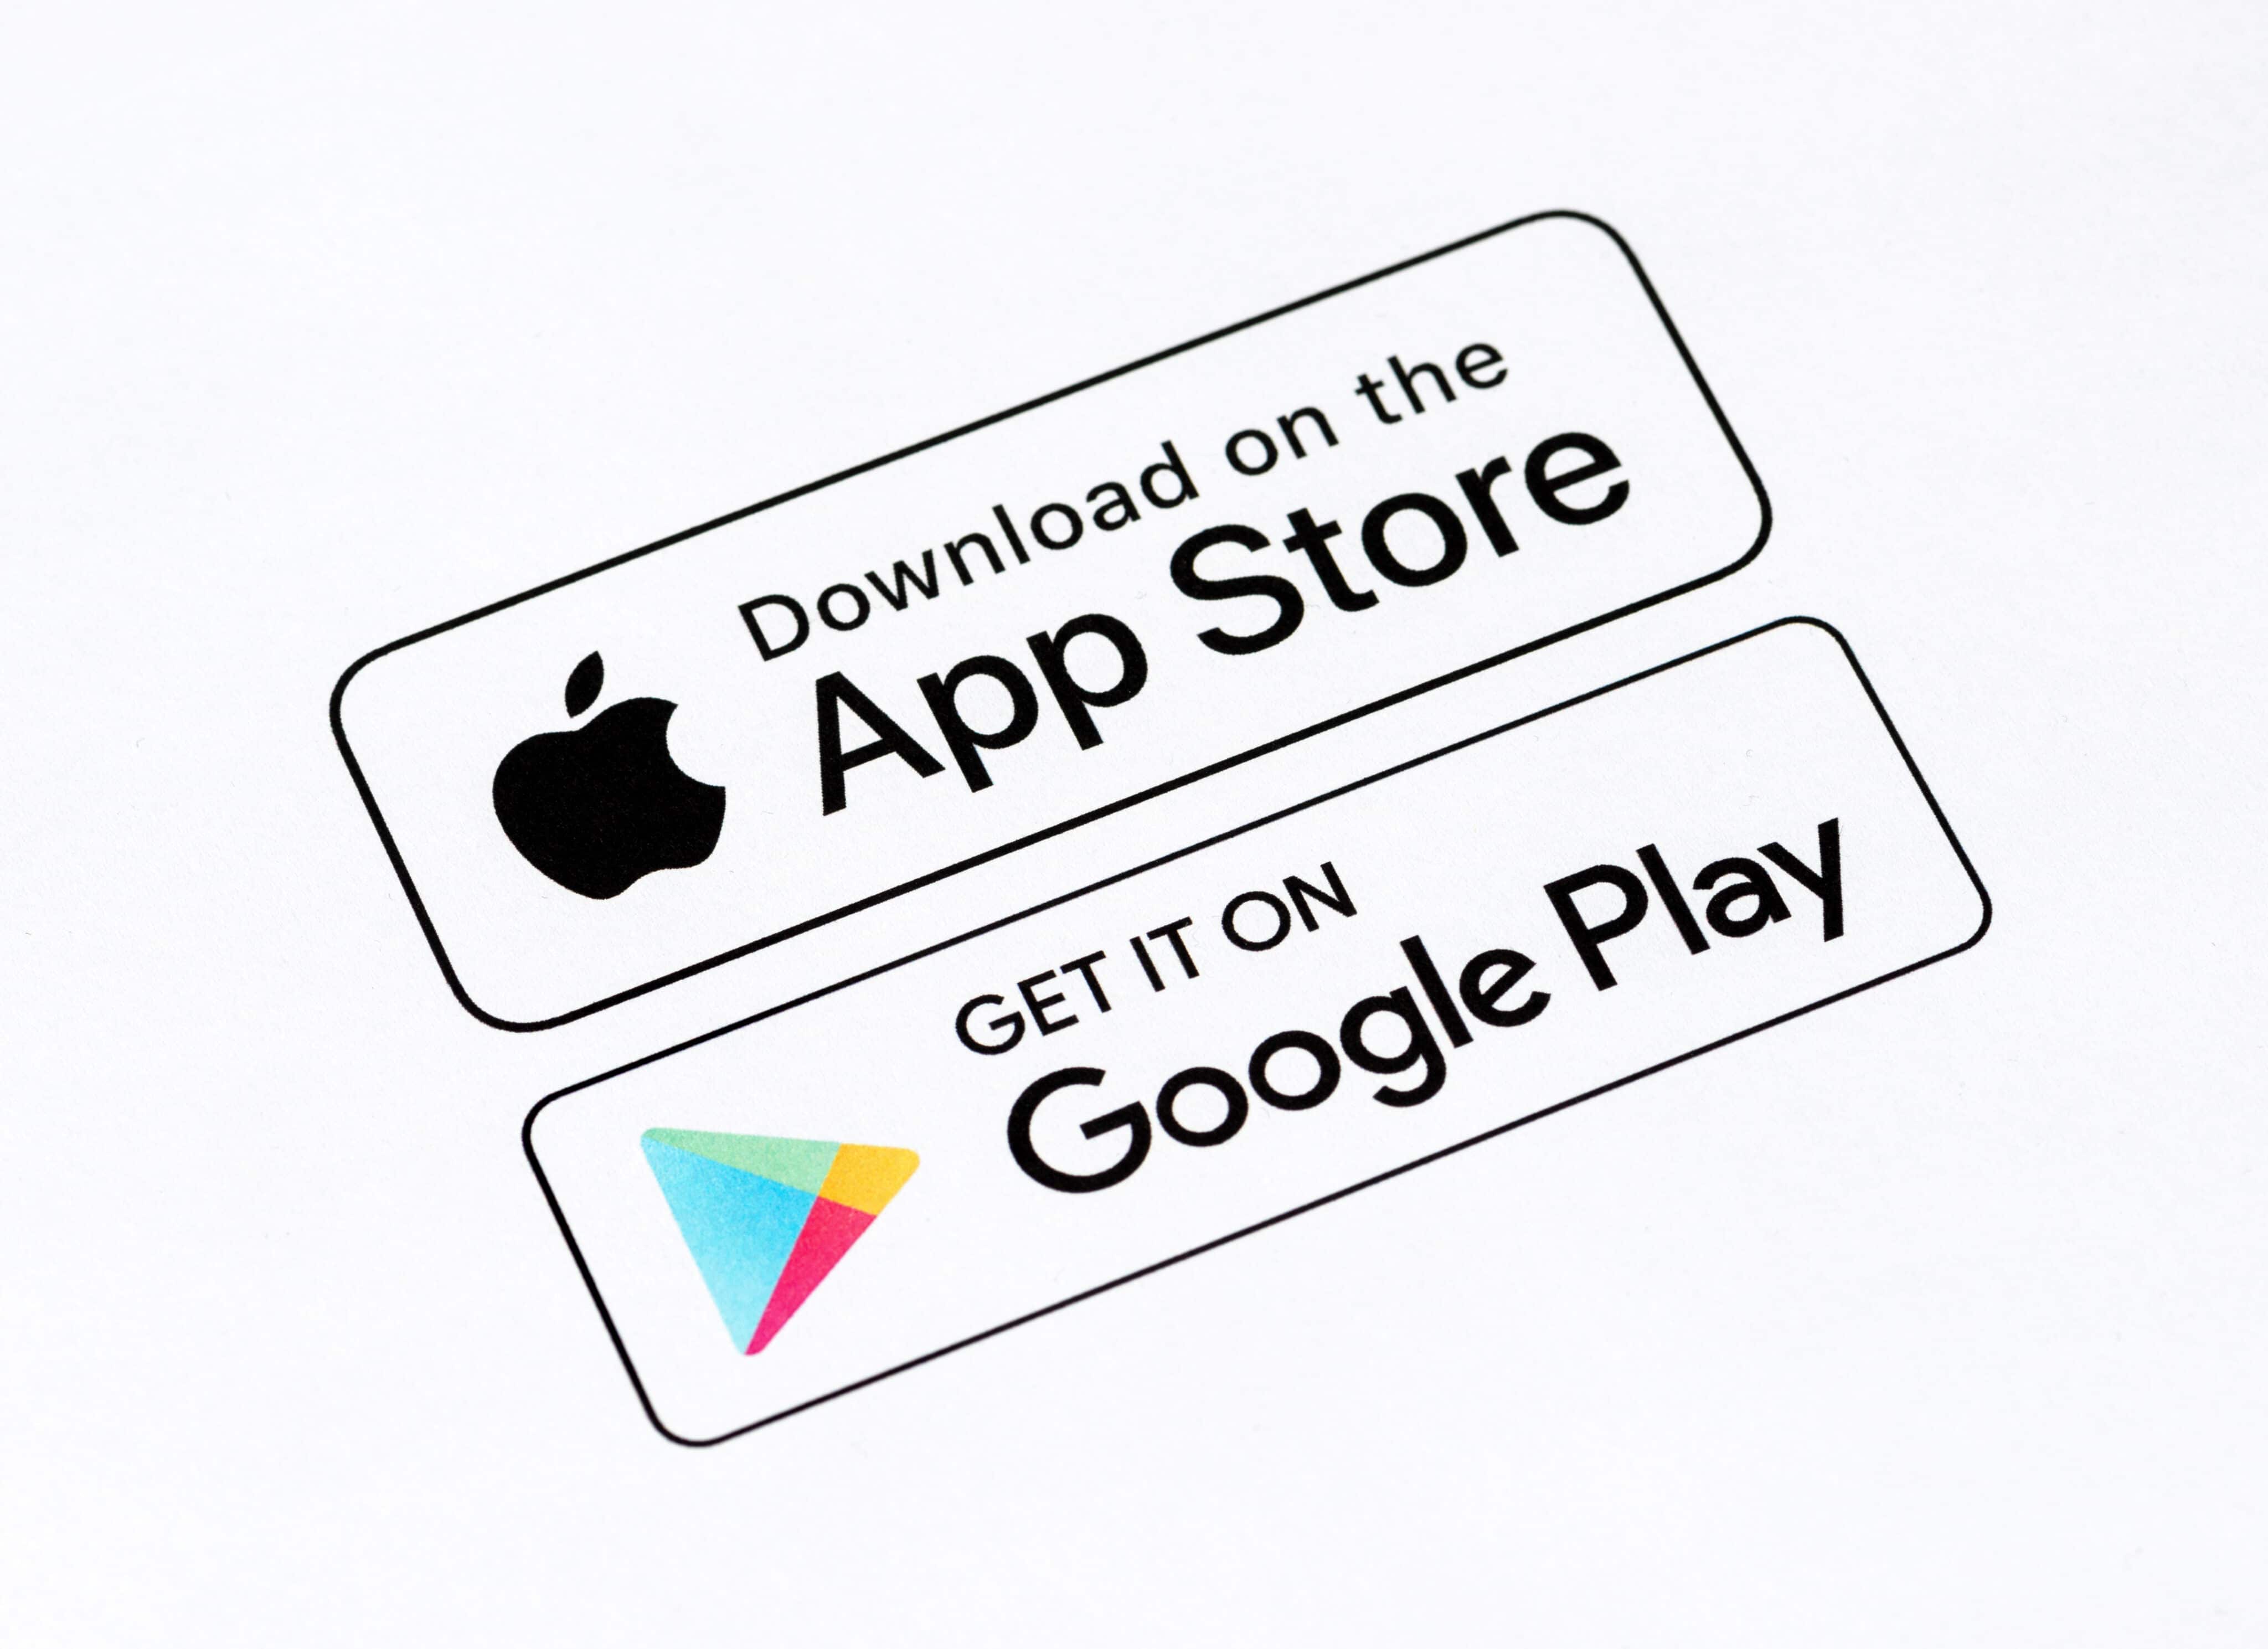 Baixar o Play Store - Play Store e outros apps do Google ganham